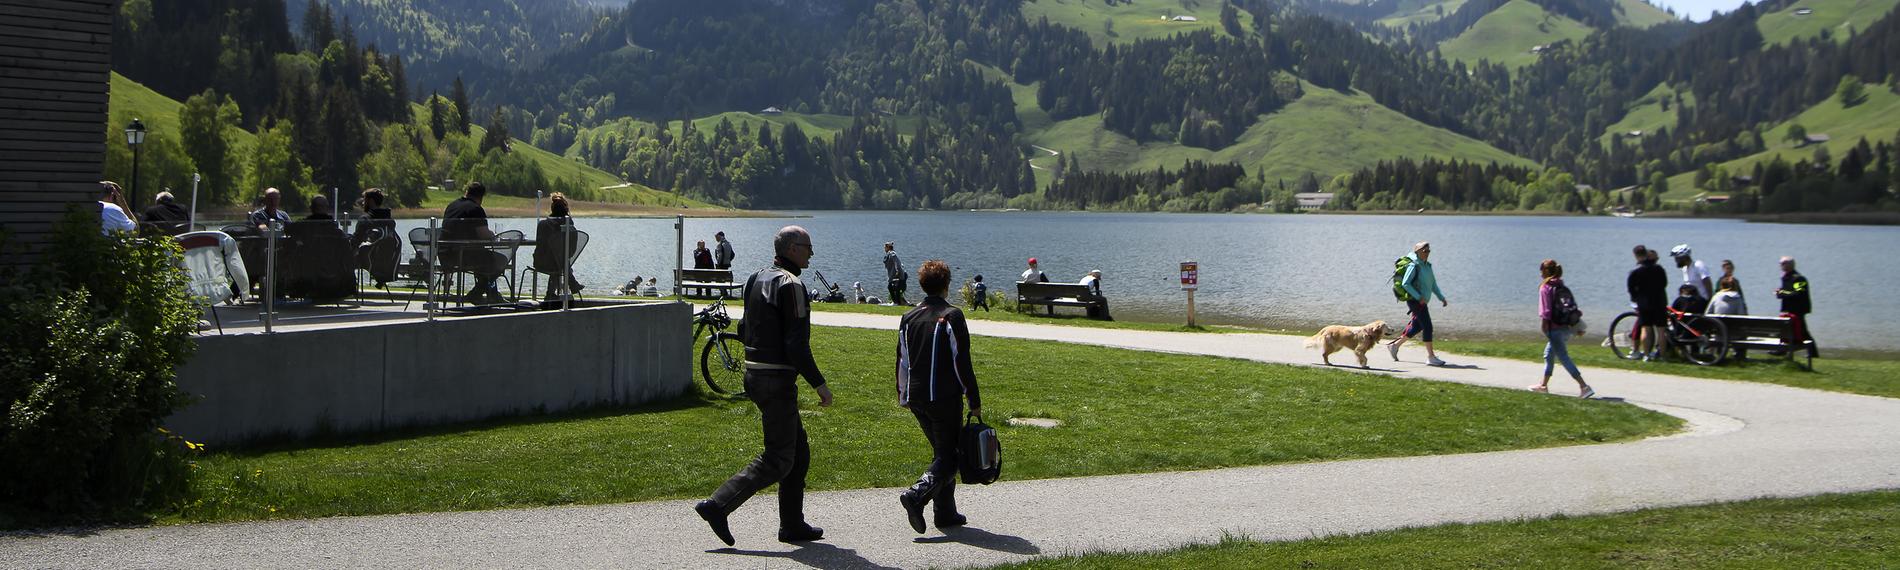 Schwarzsee in der Schweiz, aufgenommen am 17.05.2020